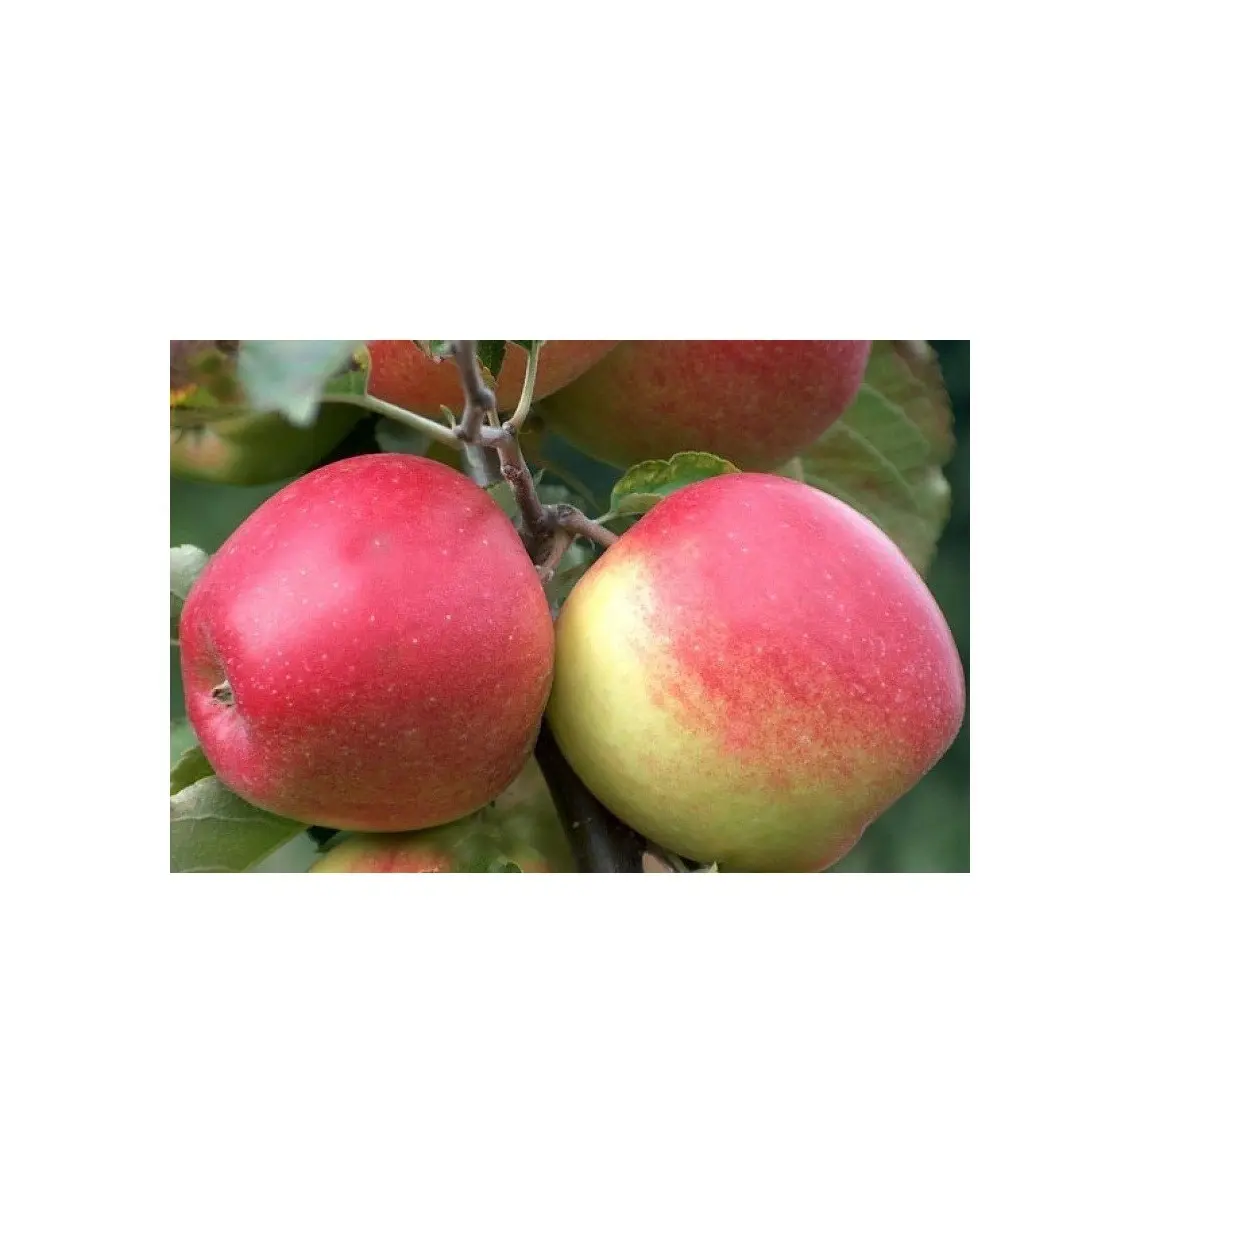 Fournisseur de prix bon marché d'Allemagne Fruits frais Jonagold Apple Fruits au prix de gros avec expédition rapide